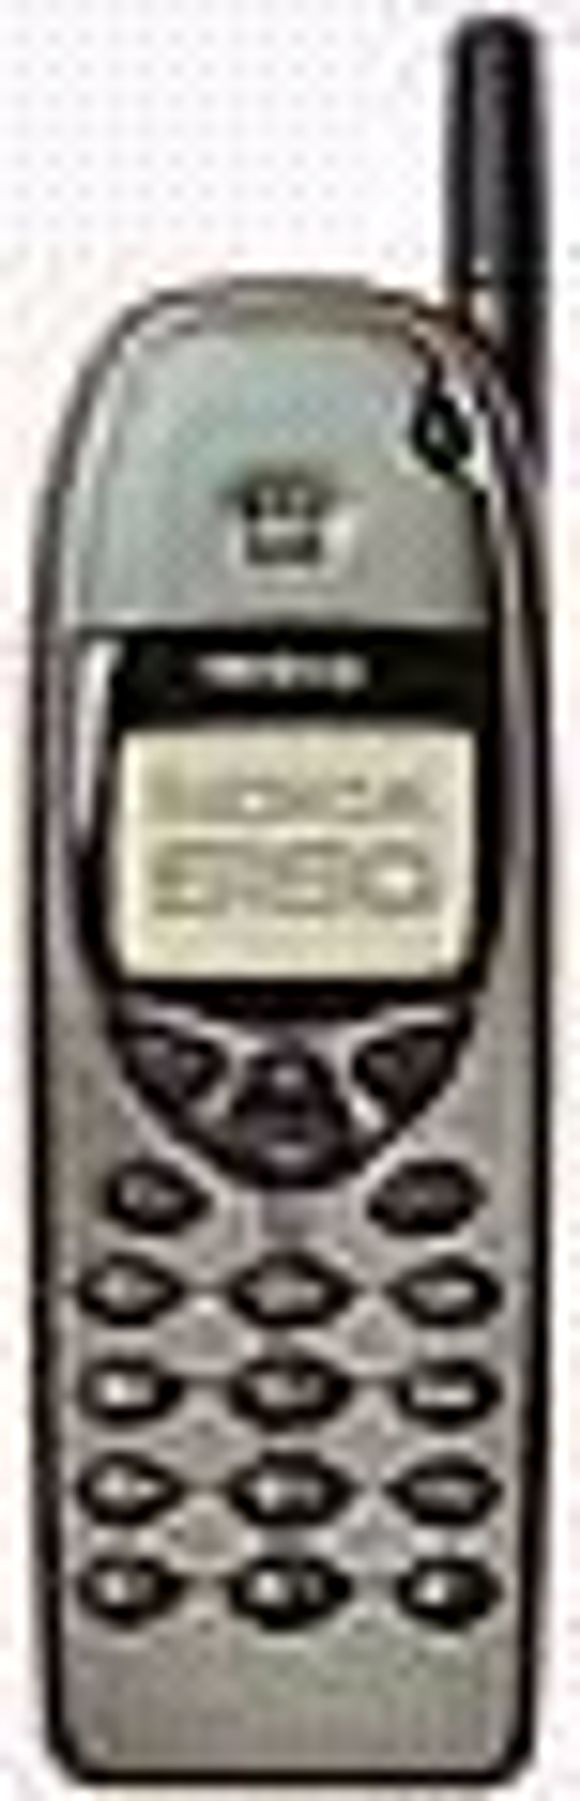 Nokia 6110.